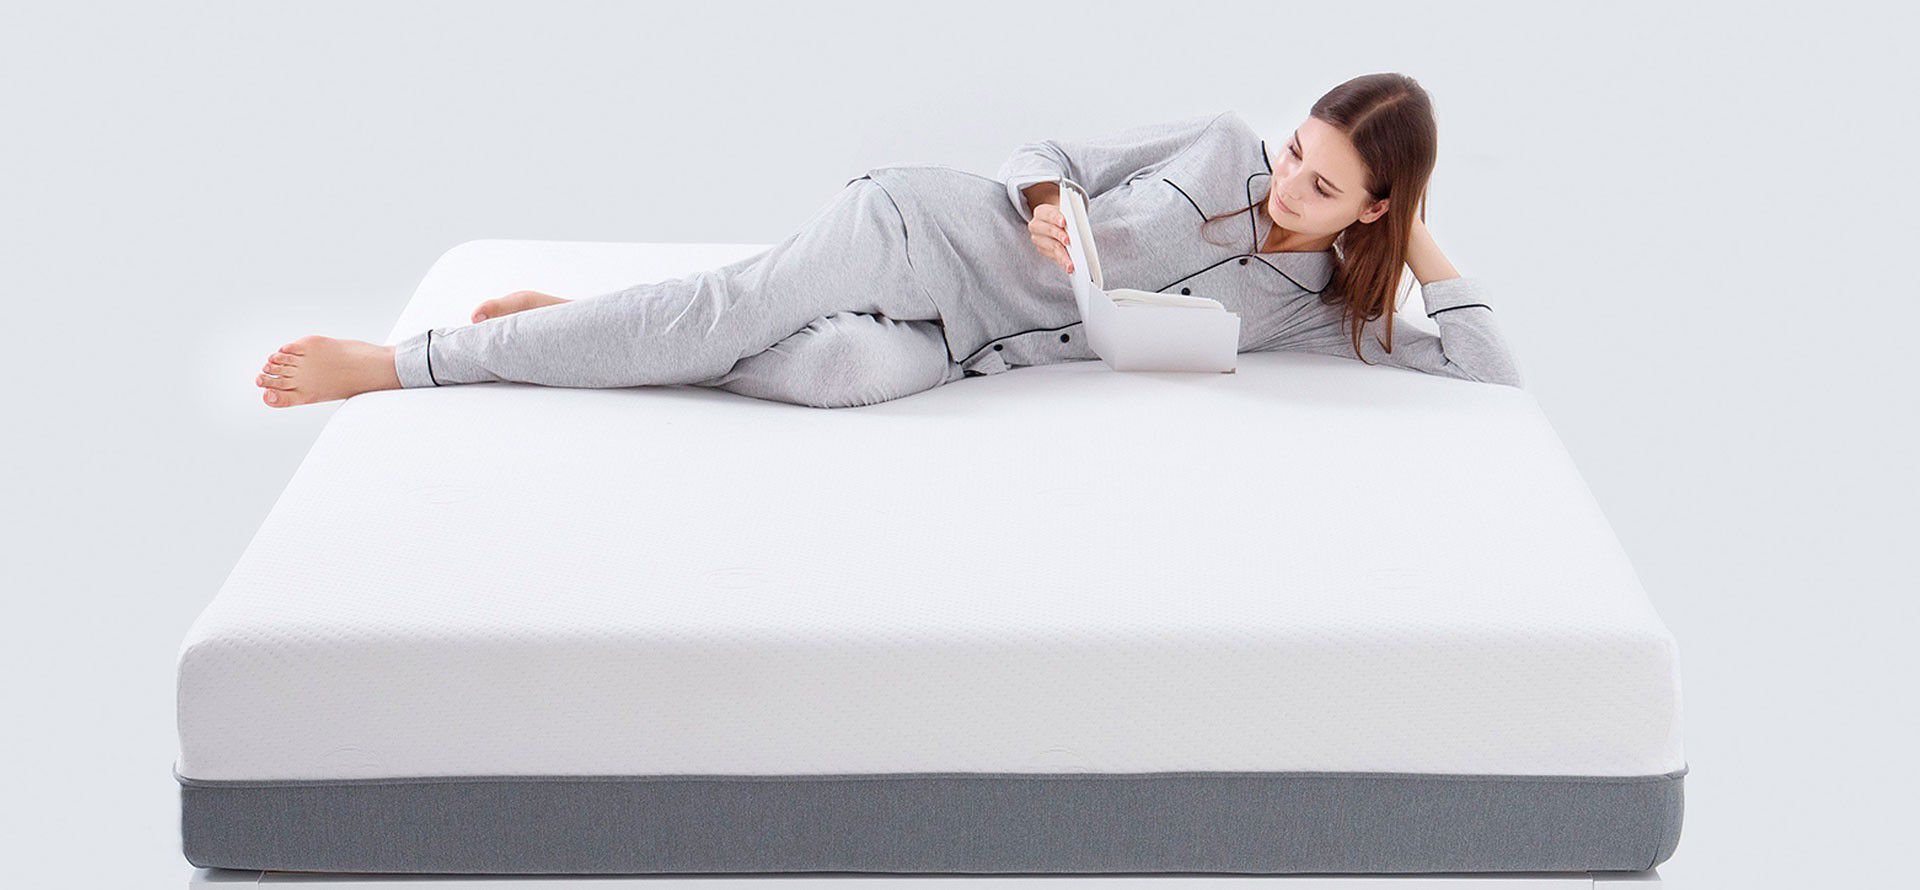 A woman lies on a mattress.